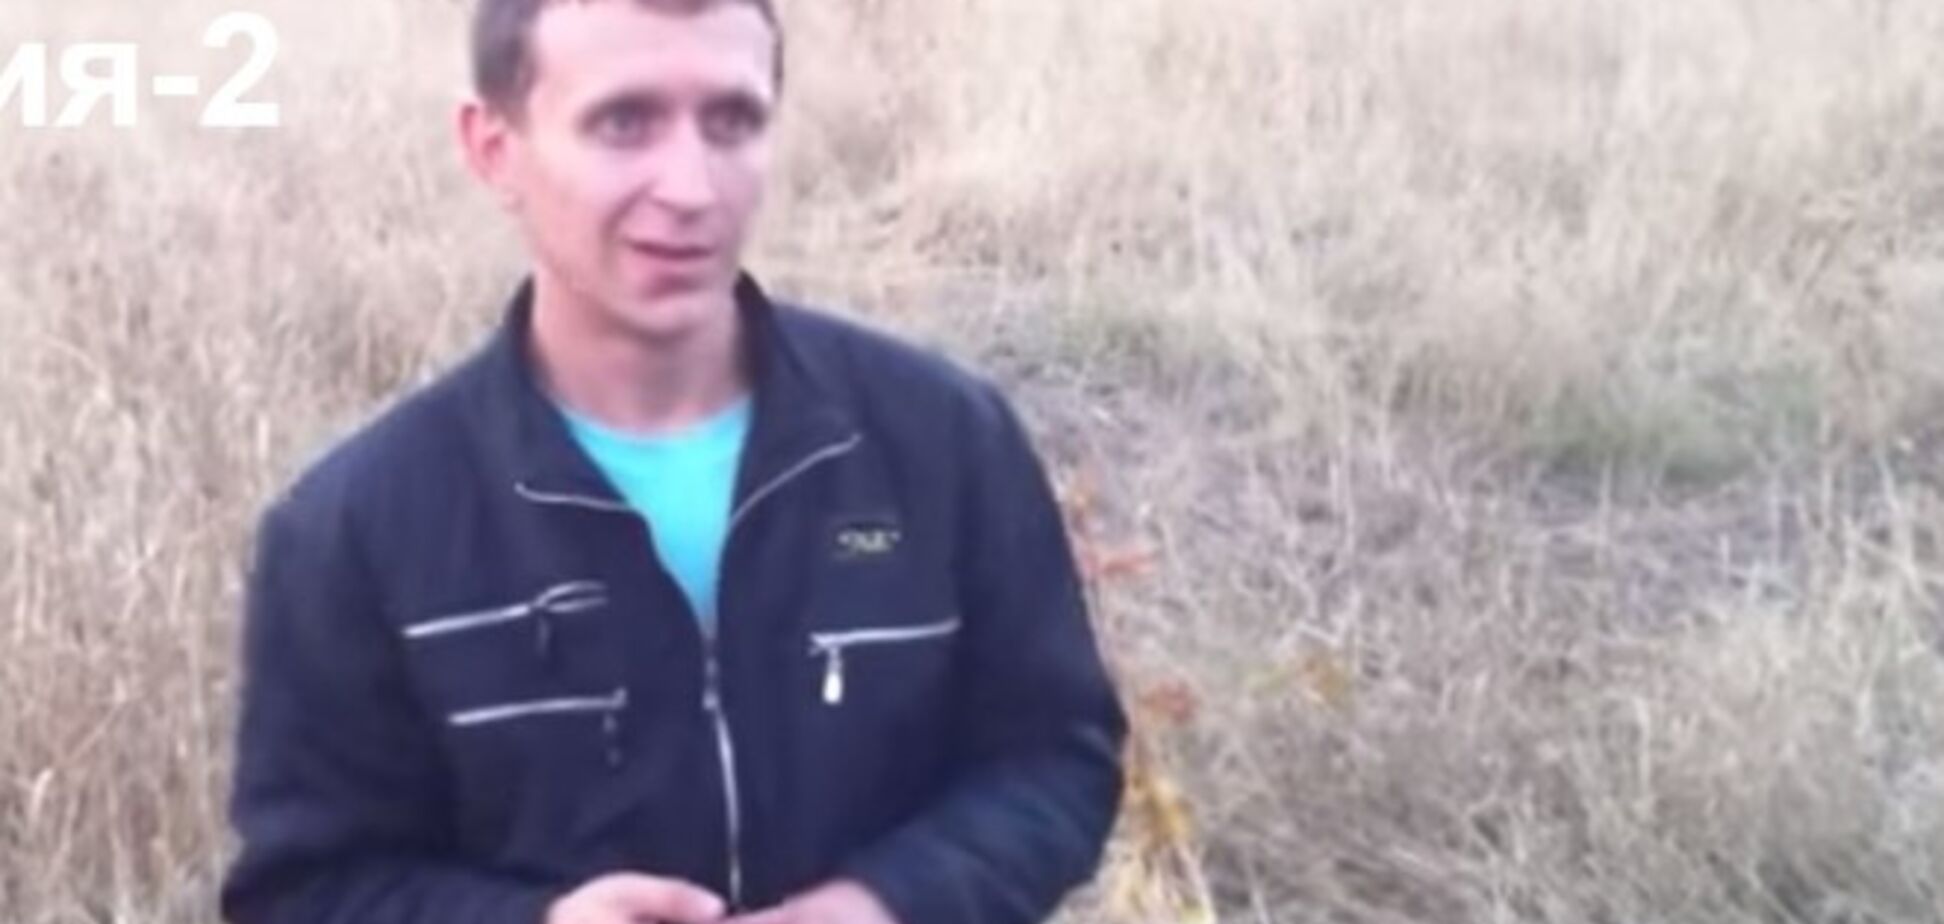 В сети появилось видео пособника террористов, который с улыбкой на лице роет траншеи для украинской армии